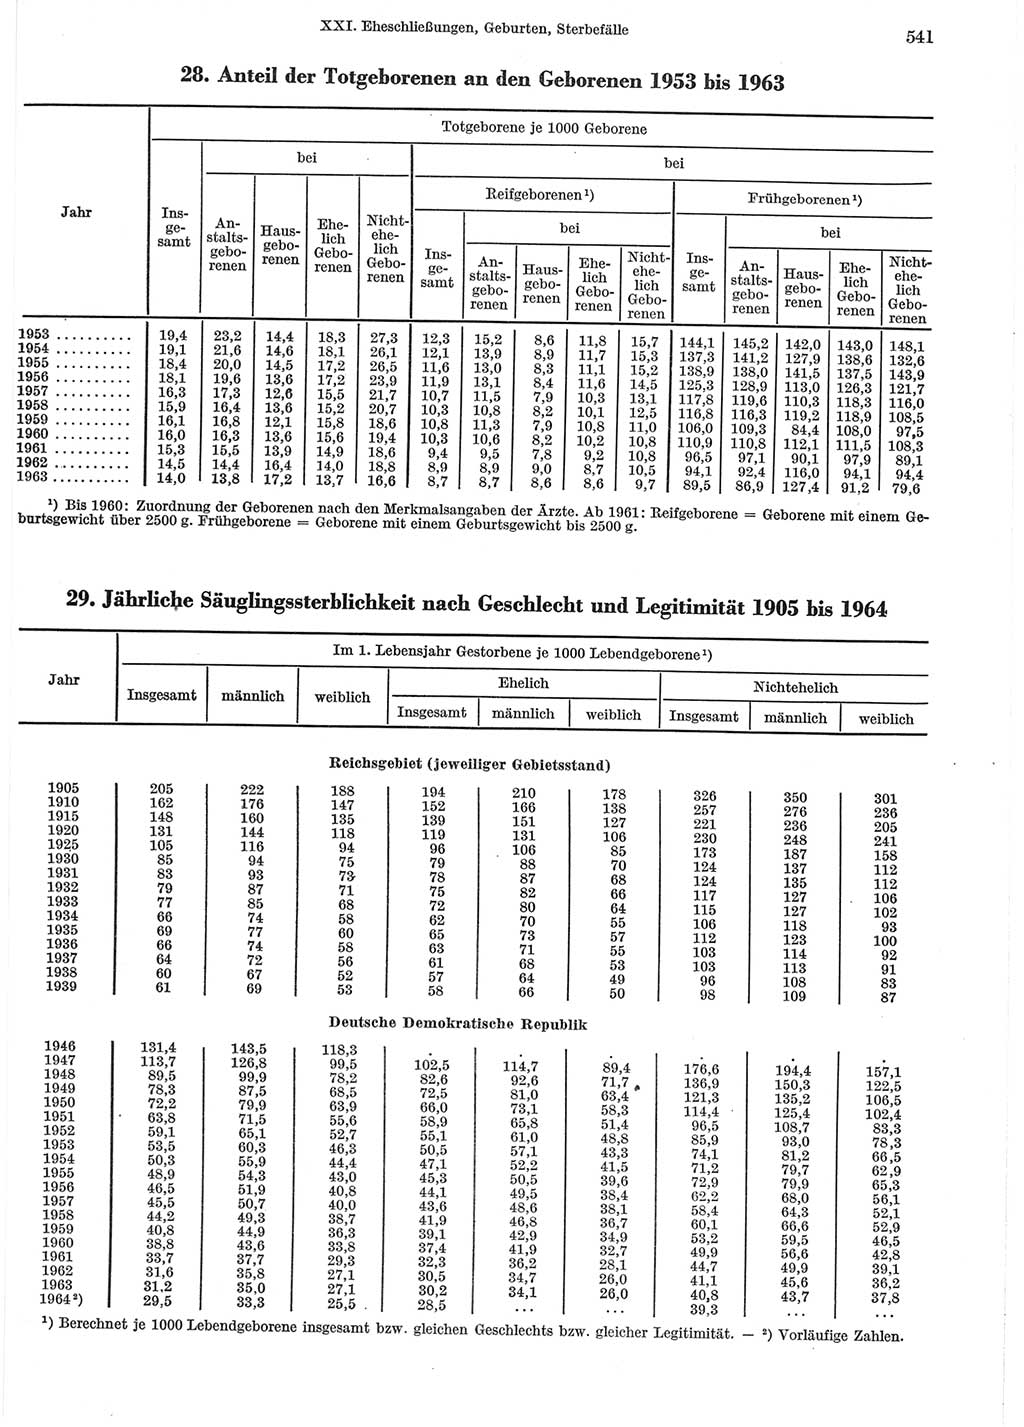 Statistisches Jahrbuch der Deutschen Demokratischen Republik (DDR) 1965, Seite 541 (Stat. Jb. DDR 1965, S. 541)